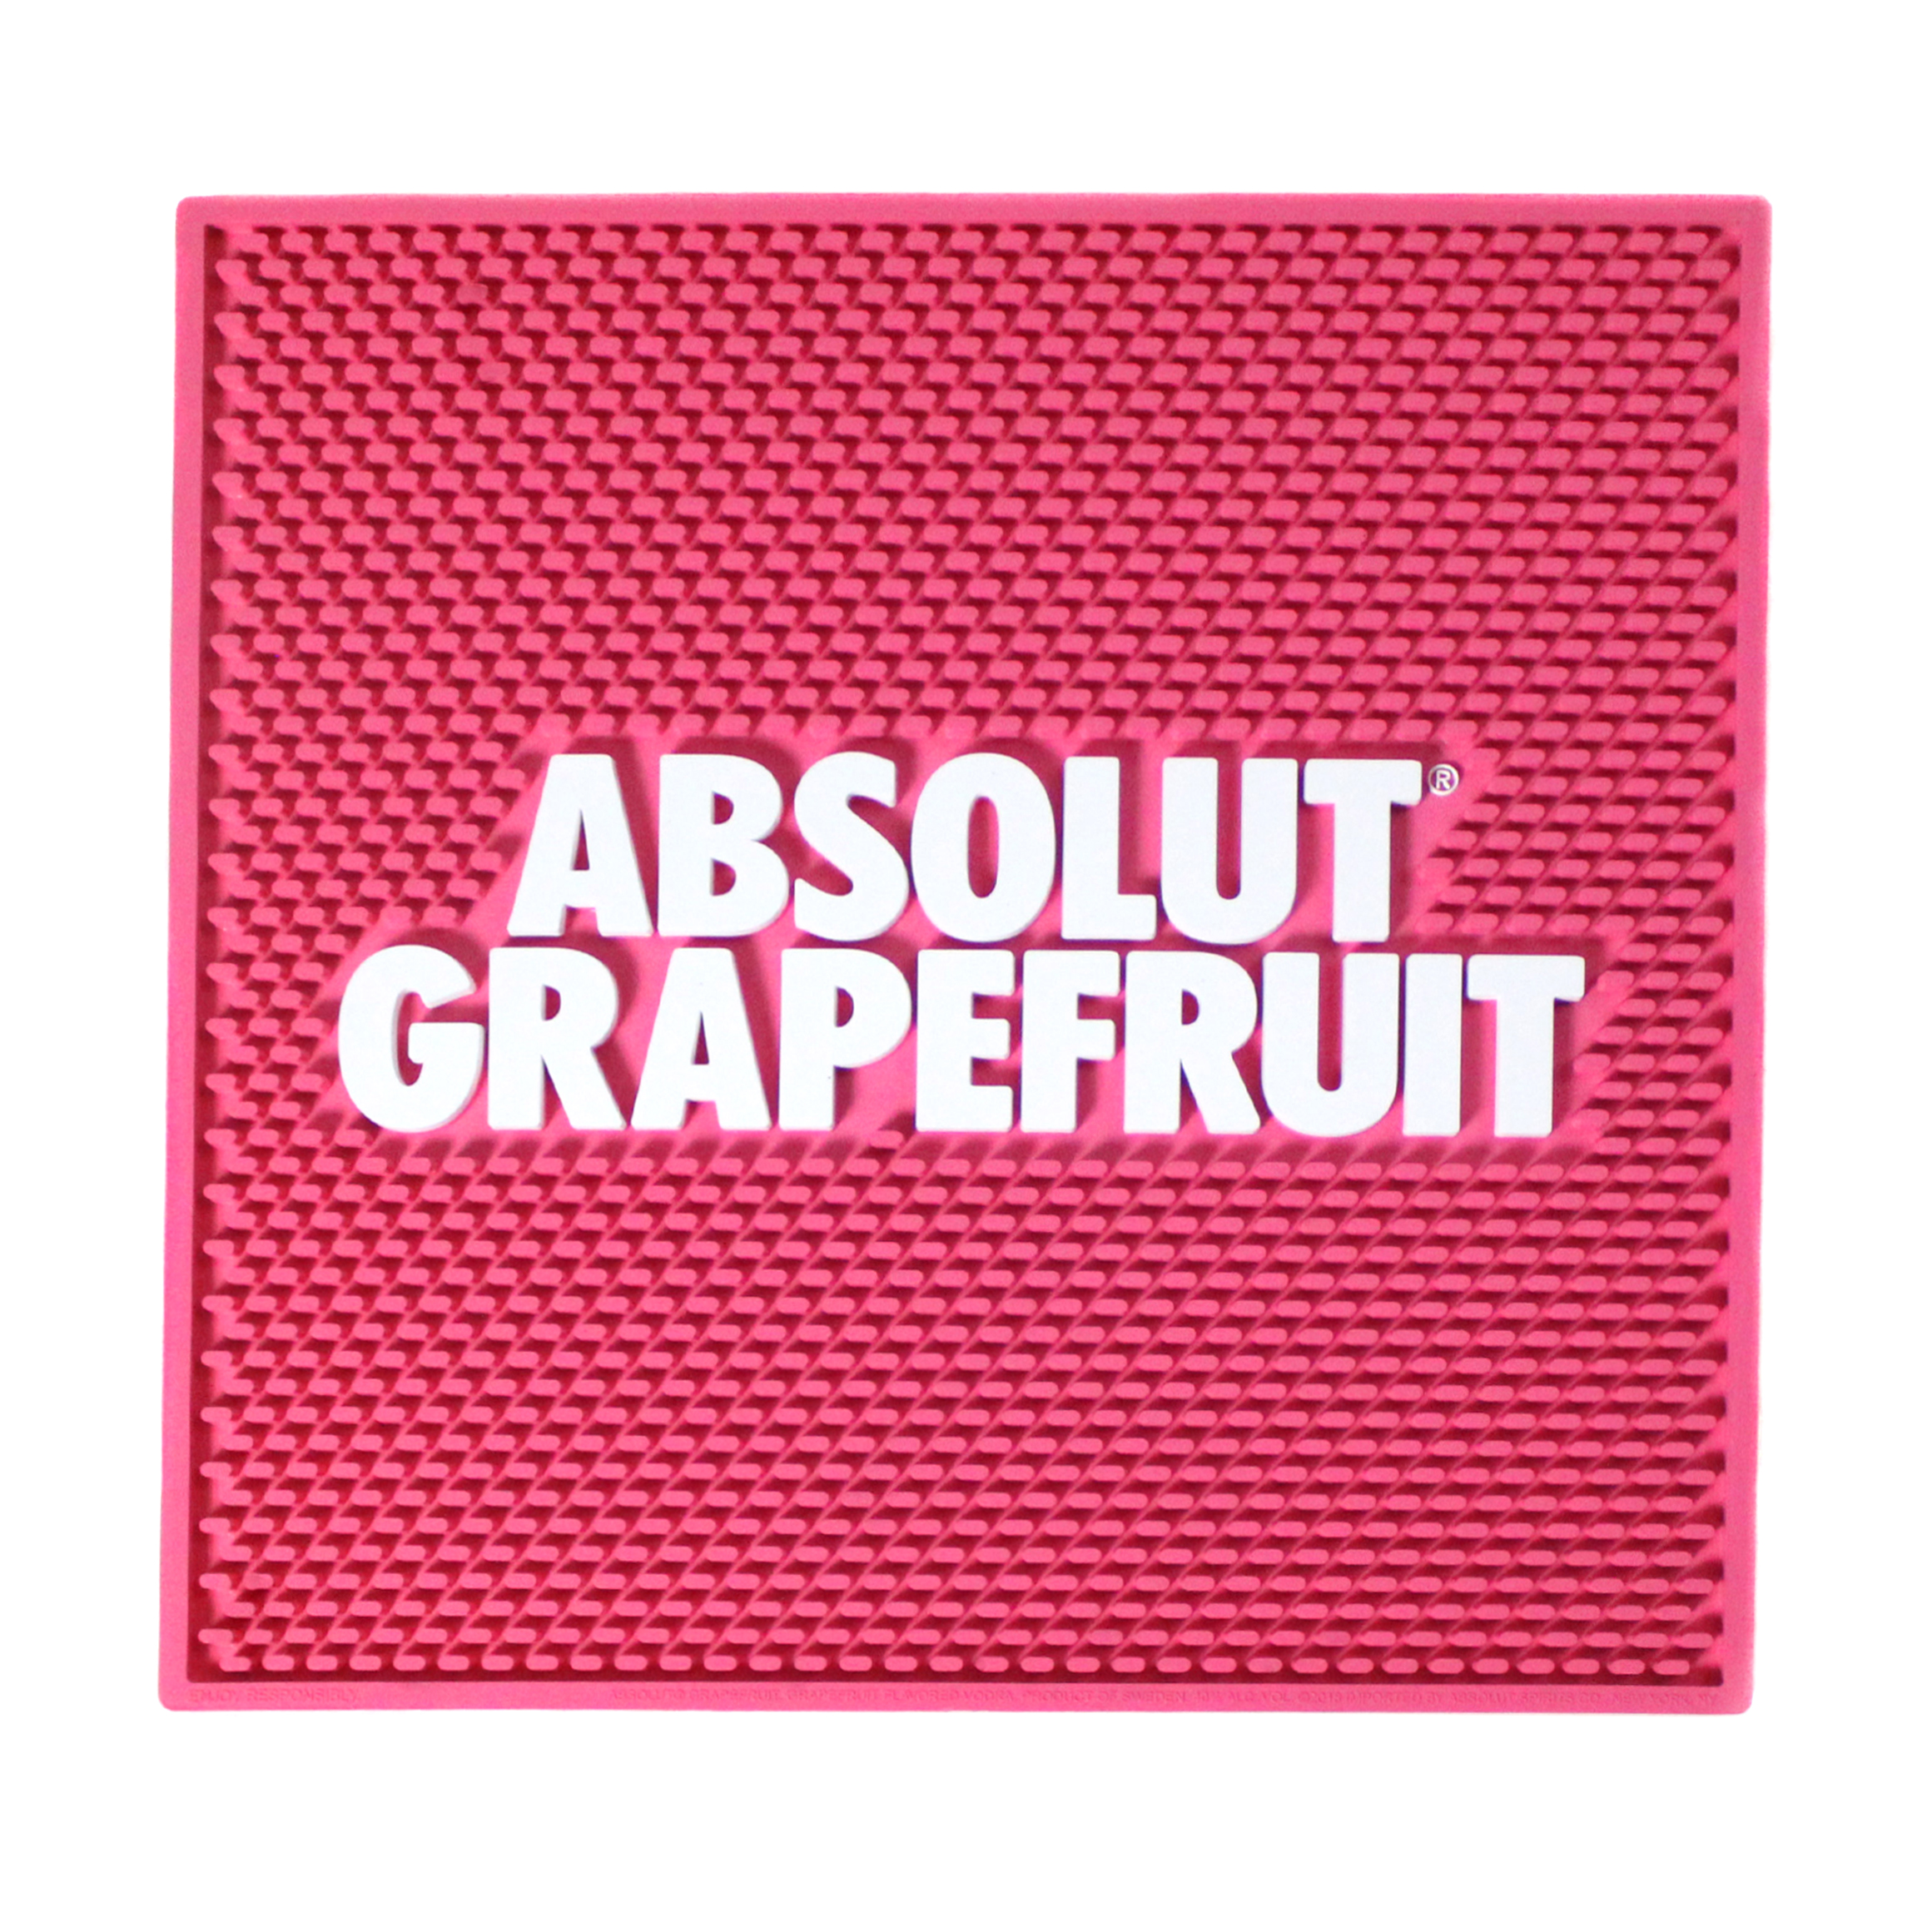 Absolute Grapefruit Counter Mat